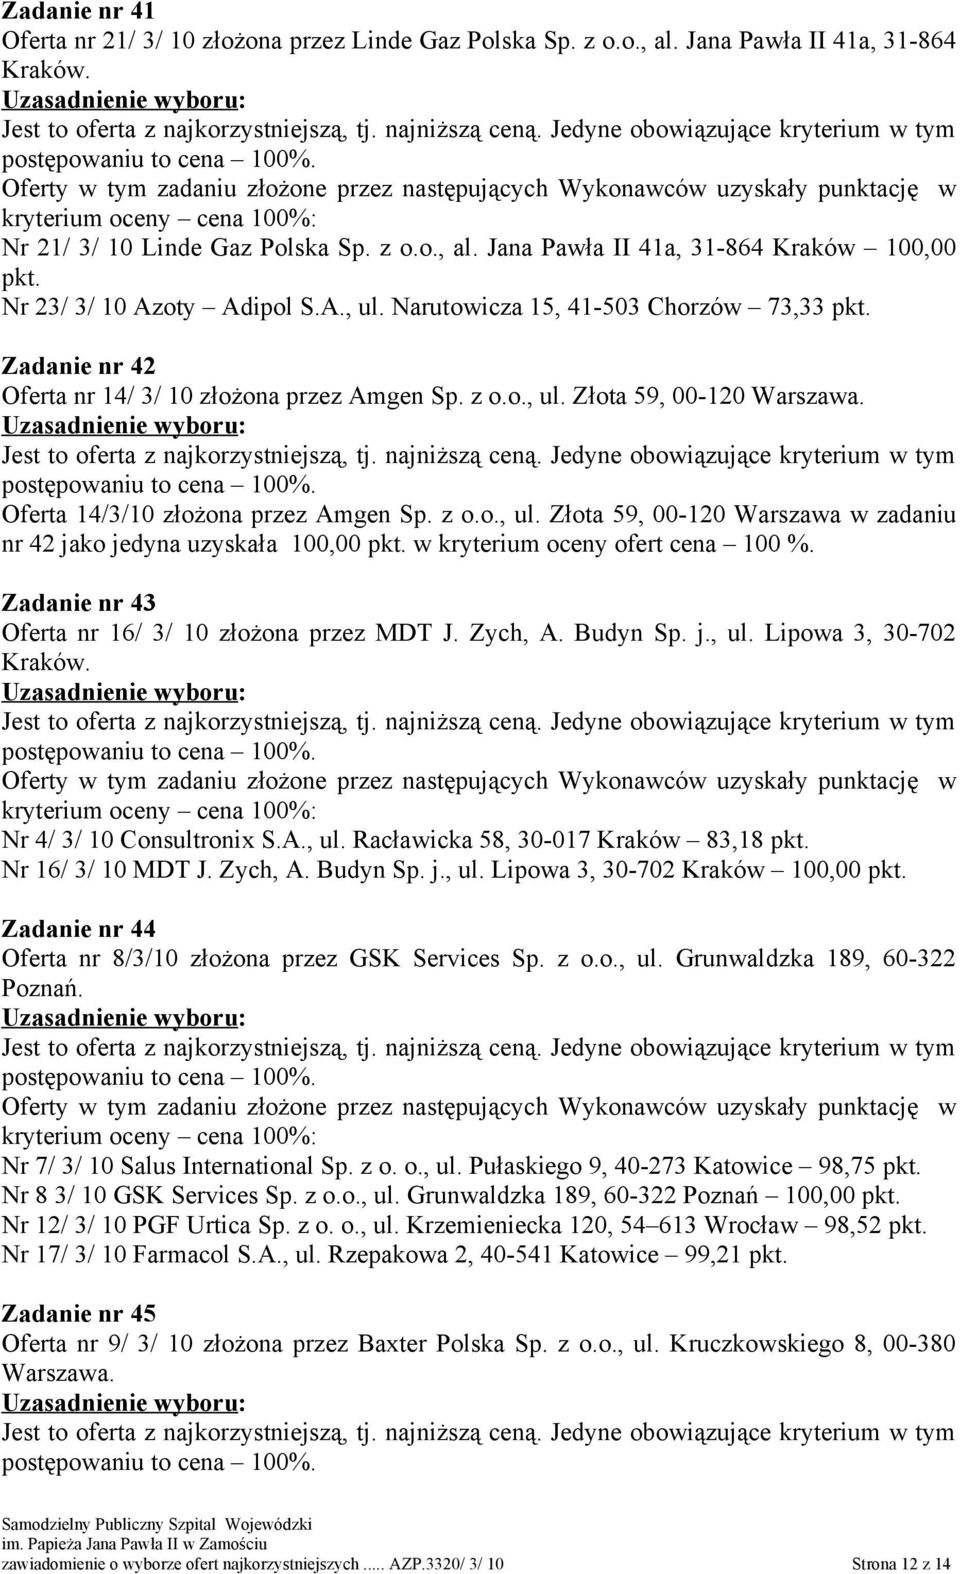 Zadanie nr 43 Oferta nr 16/ 3/ 10 złożona przez MDT J. Zych, A. Budyn Sp. j., ul. Lipowa 3, 30-702 Kraków. Nr 4/ 3/ 10 Consultronix S.A., ul. Racławicka 58, 30-017 Kraków 83,18 Nr 16/ 3/ 10 MDT J.